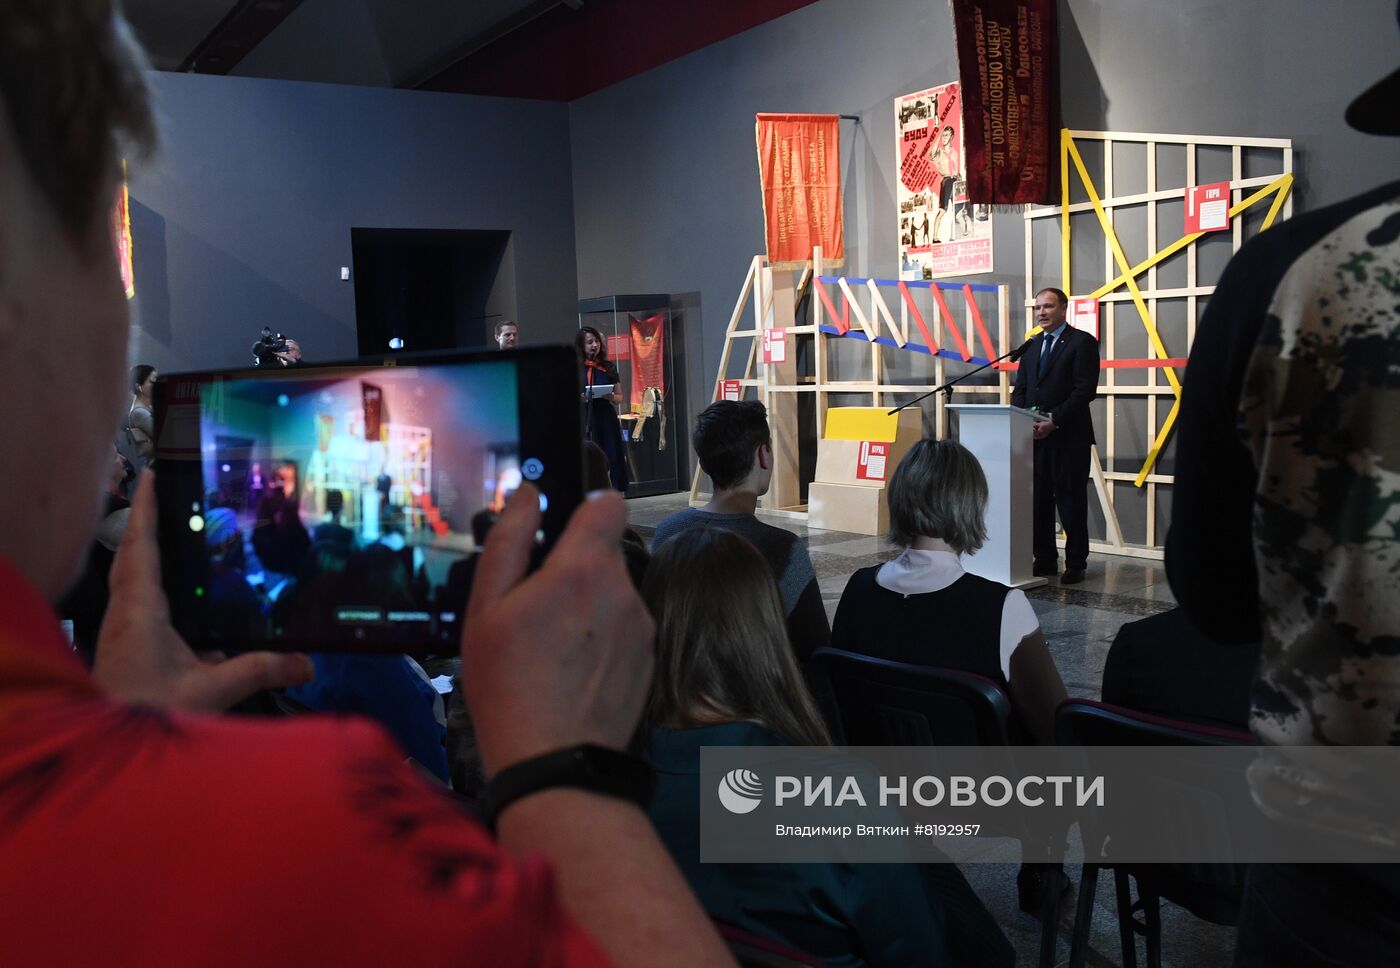 Открытие выставки "Век пионерии"